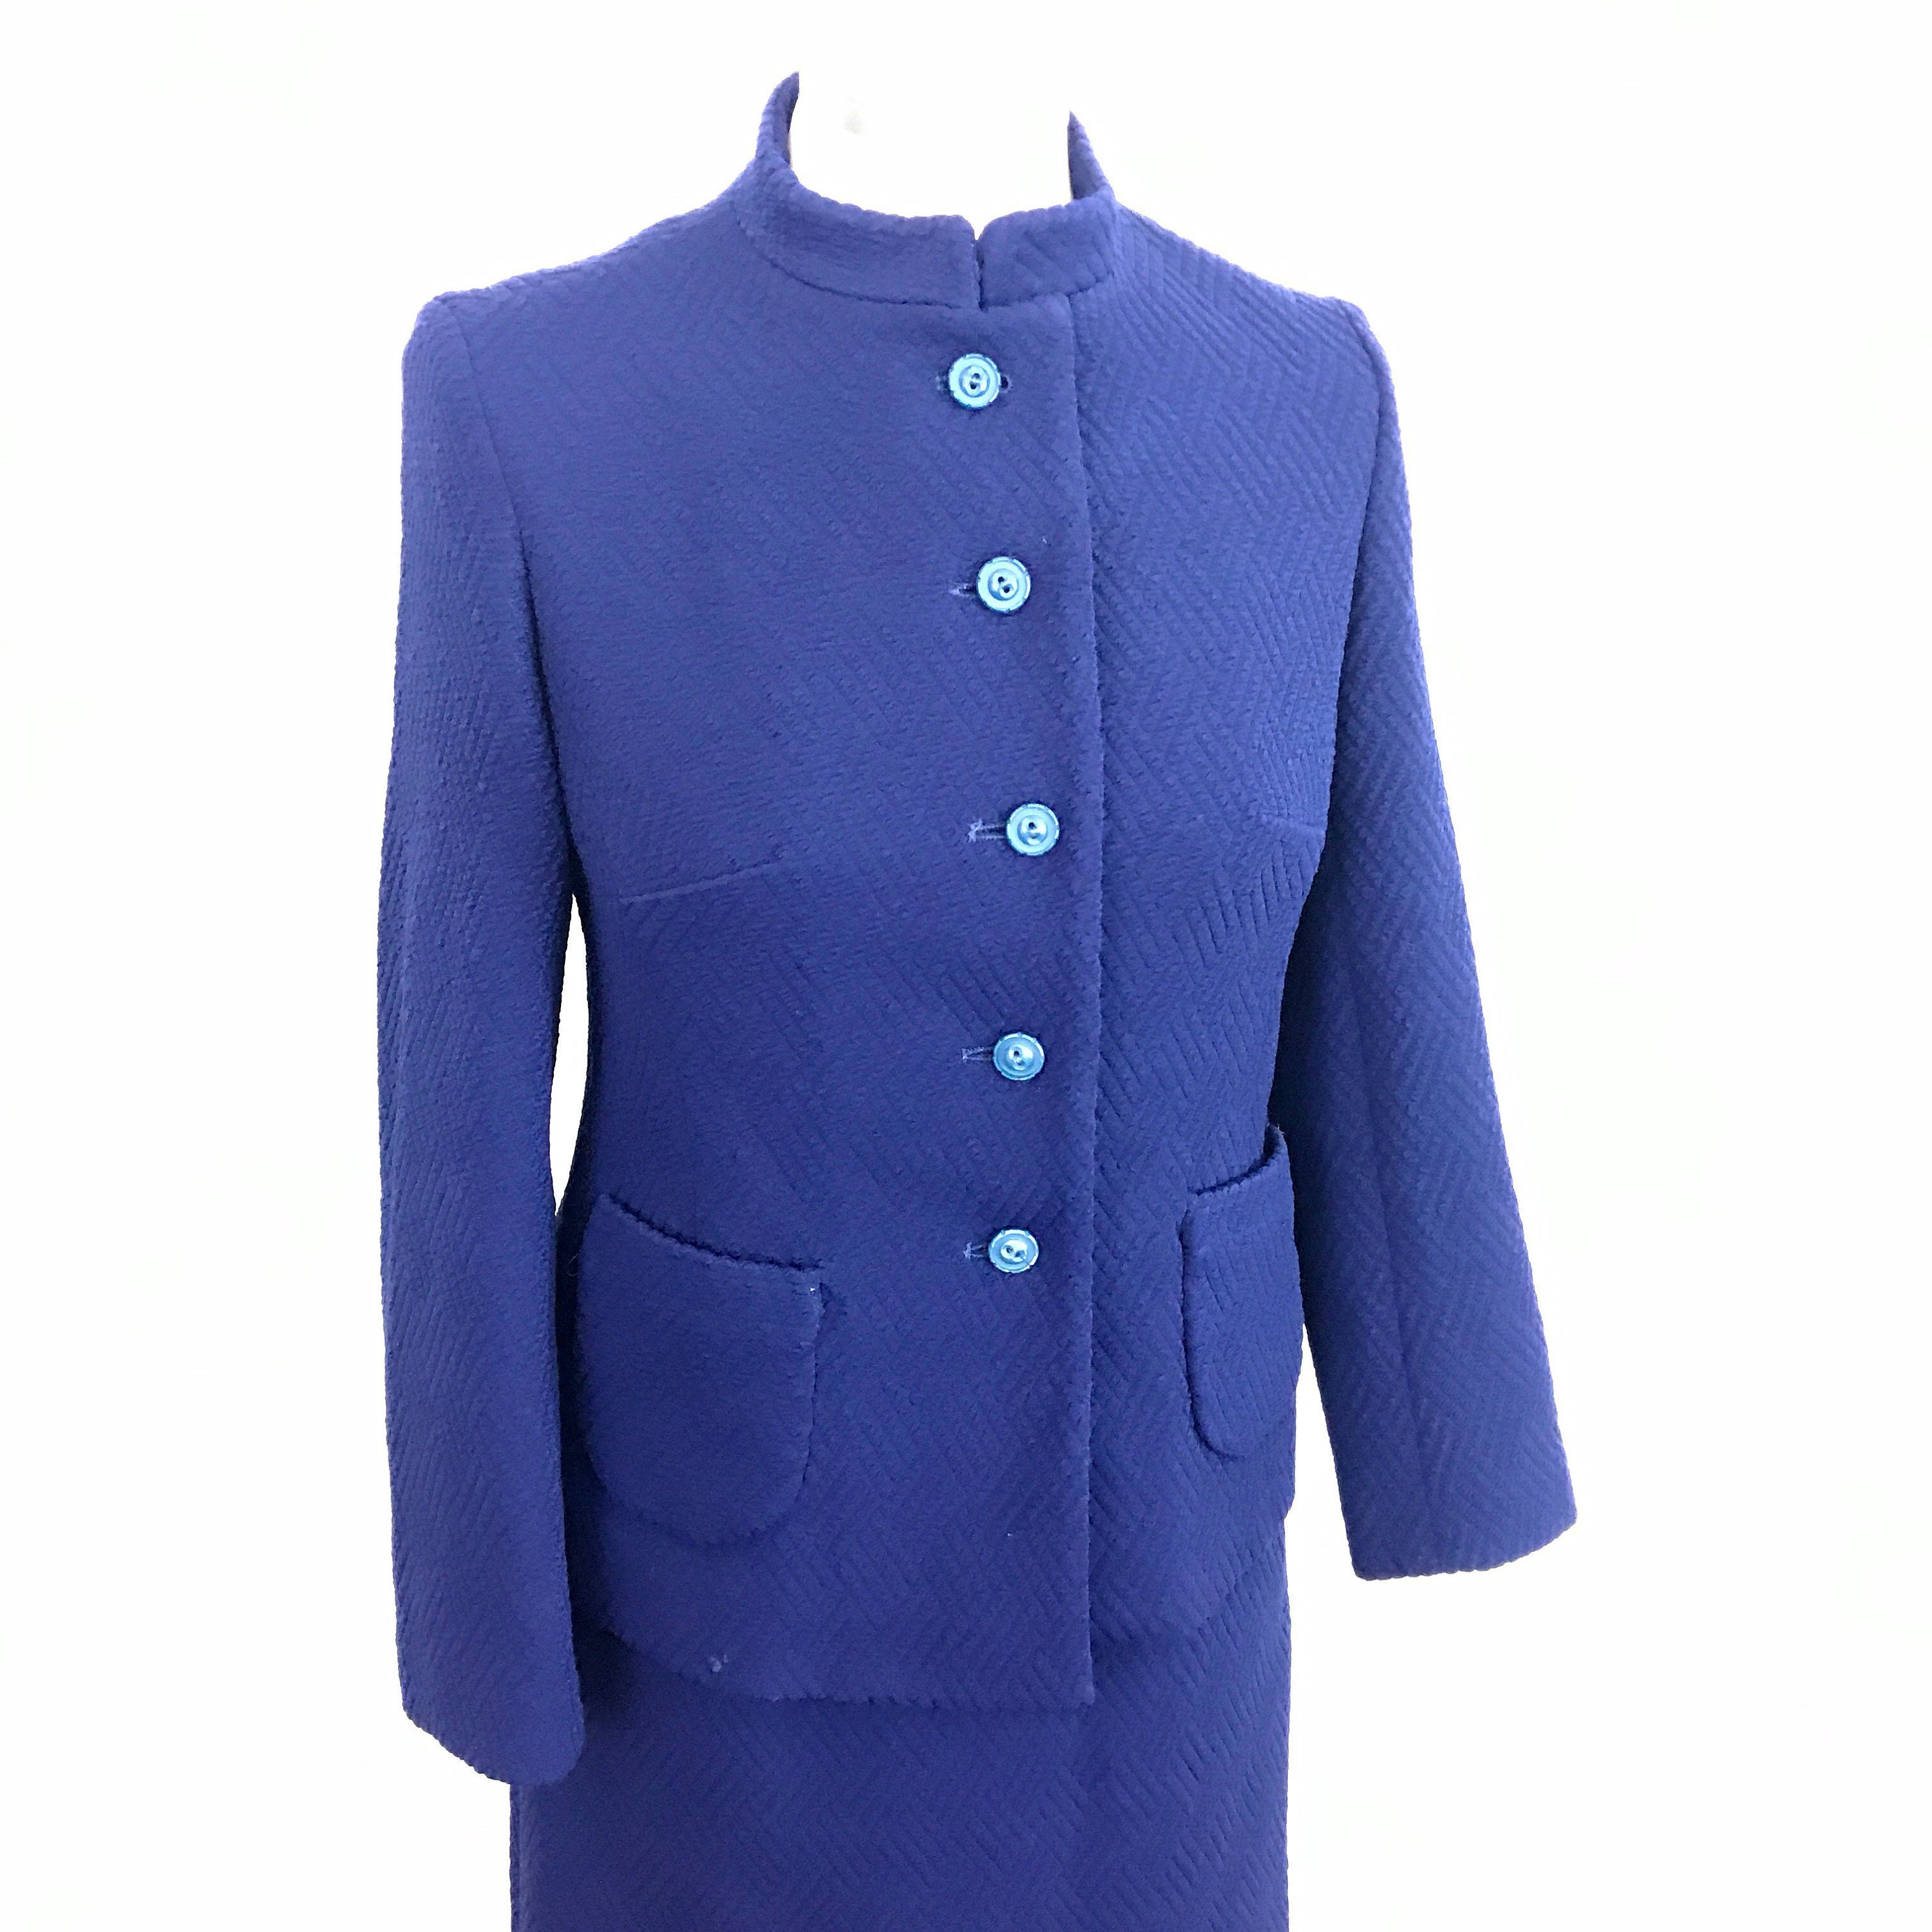 1960s suit Mod suit vintage crimplene navy blue 60s | Etsy